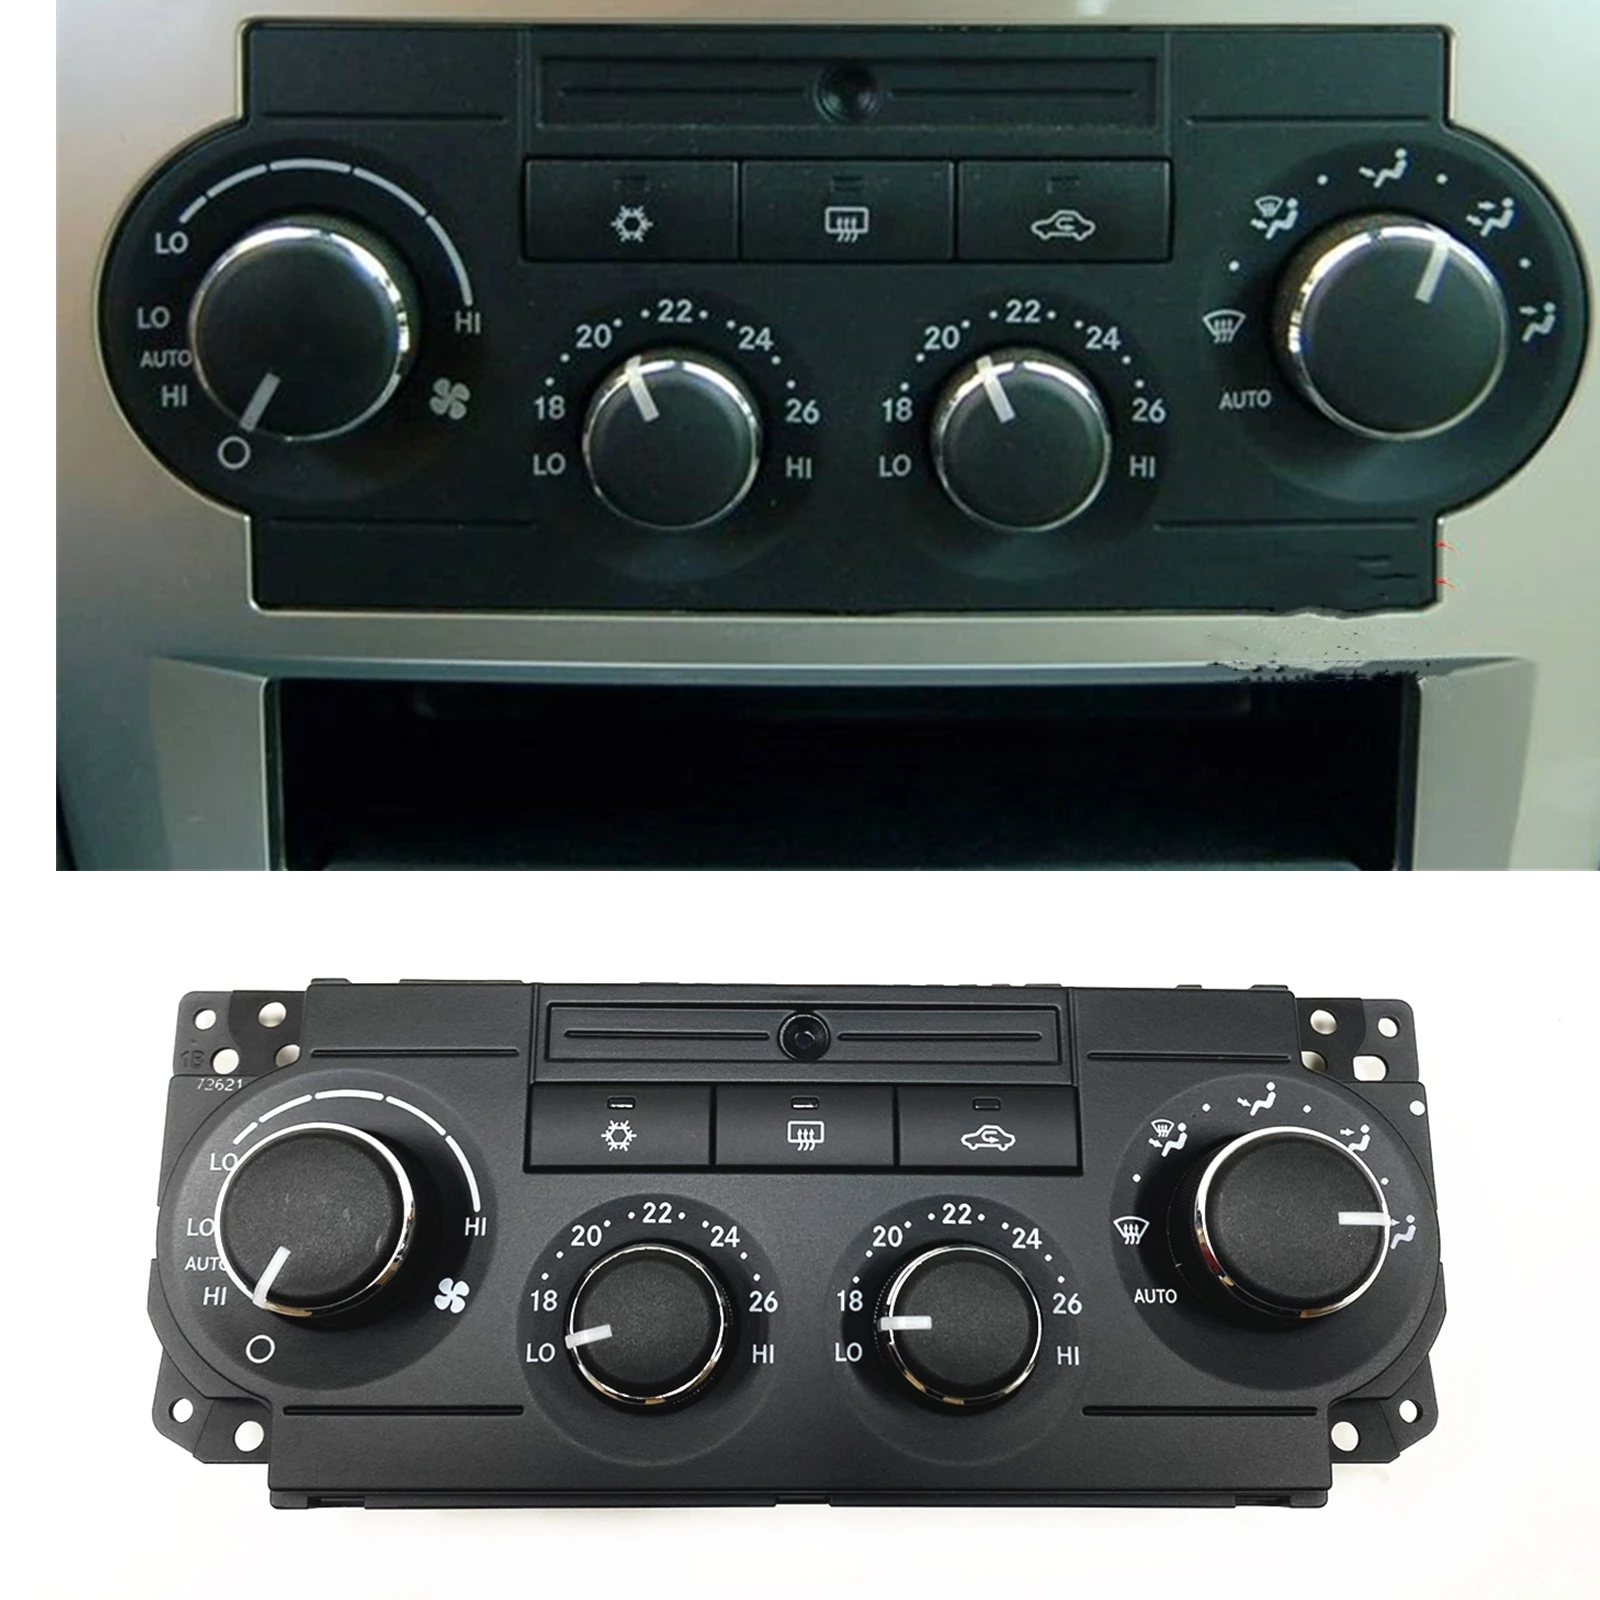 

A/C нагреватель климатическая панель управления переключатель кнопка Крышка для Chrysler 300C 2005-2010